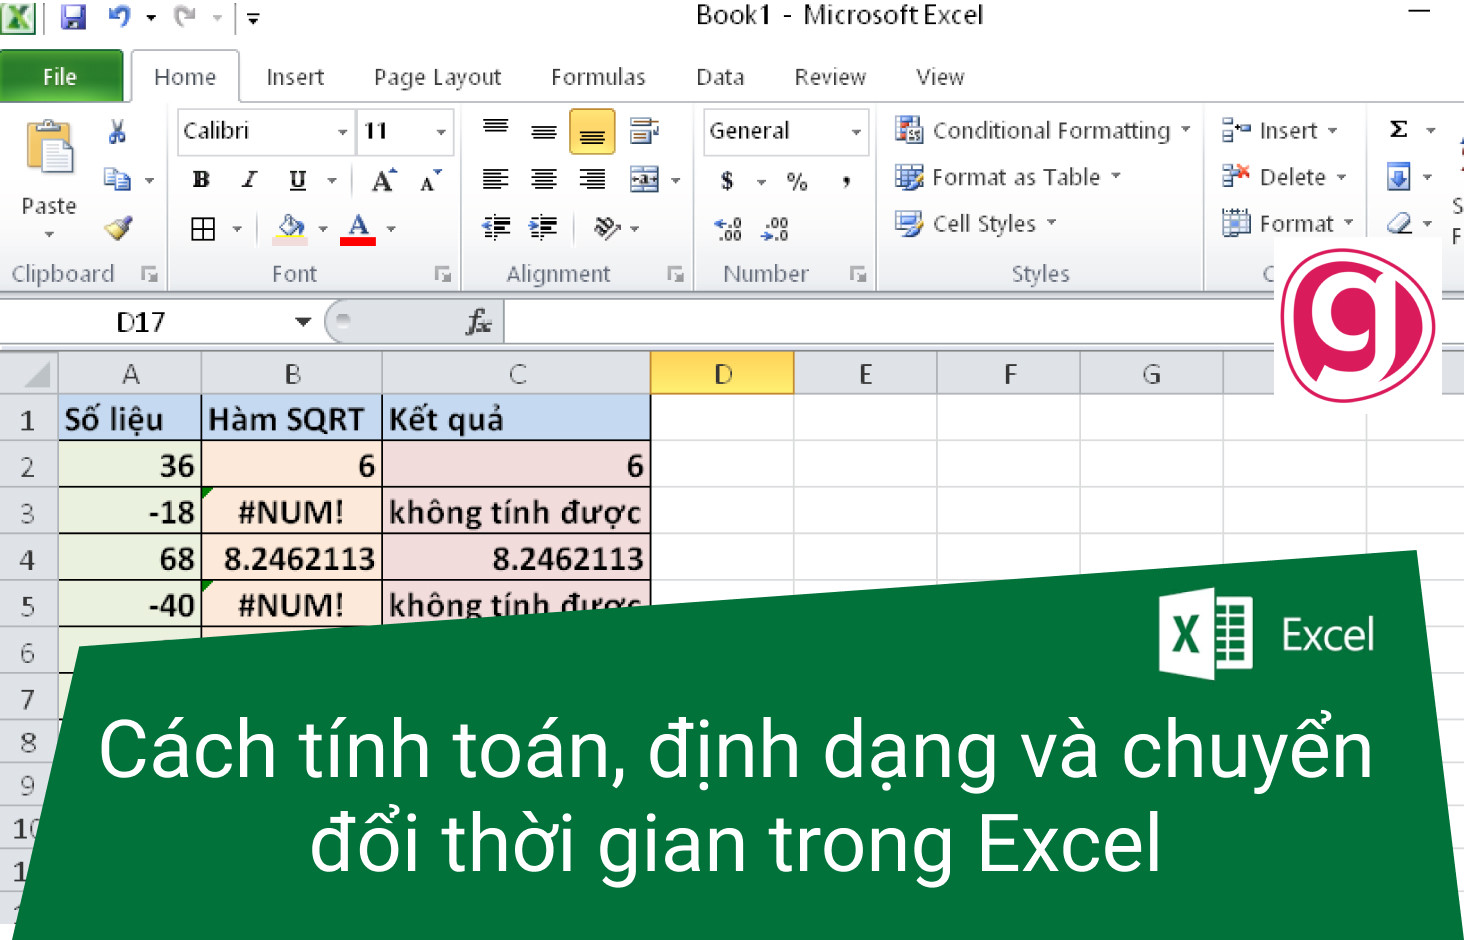 Cách tính toán, định dạng và chuyển đổi thời gian trong Excel